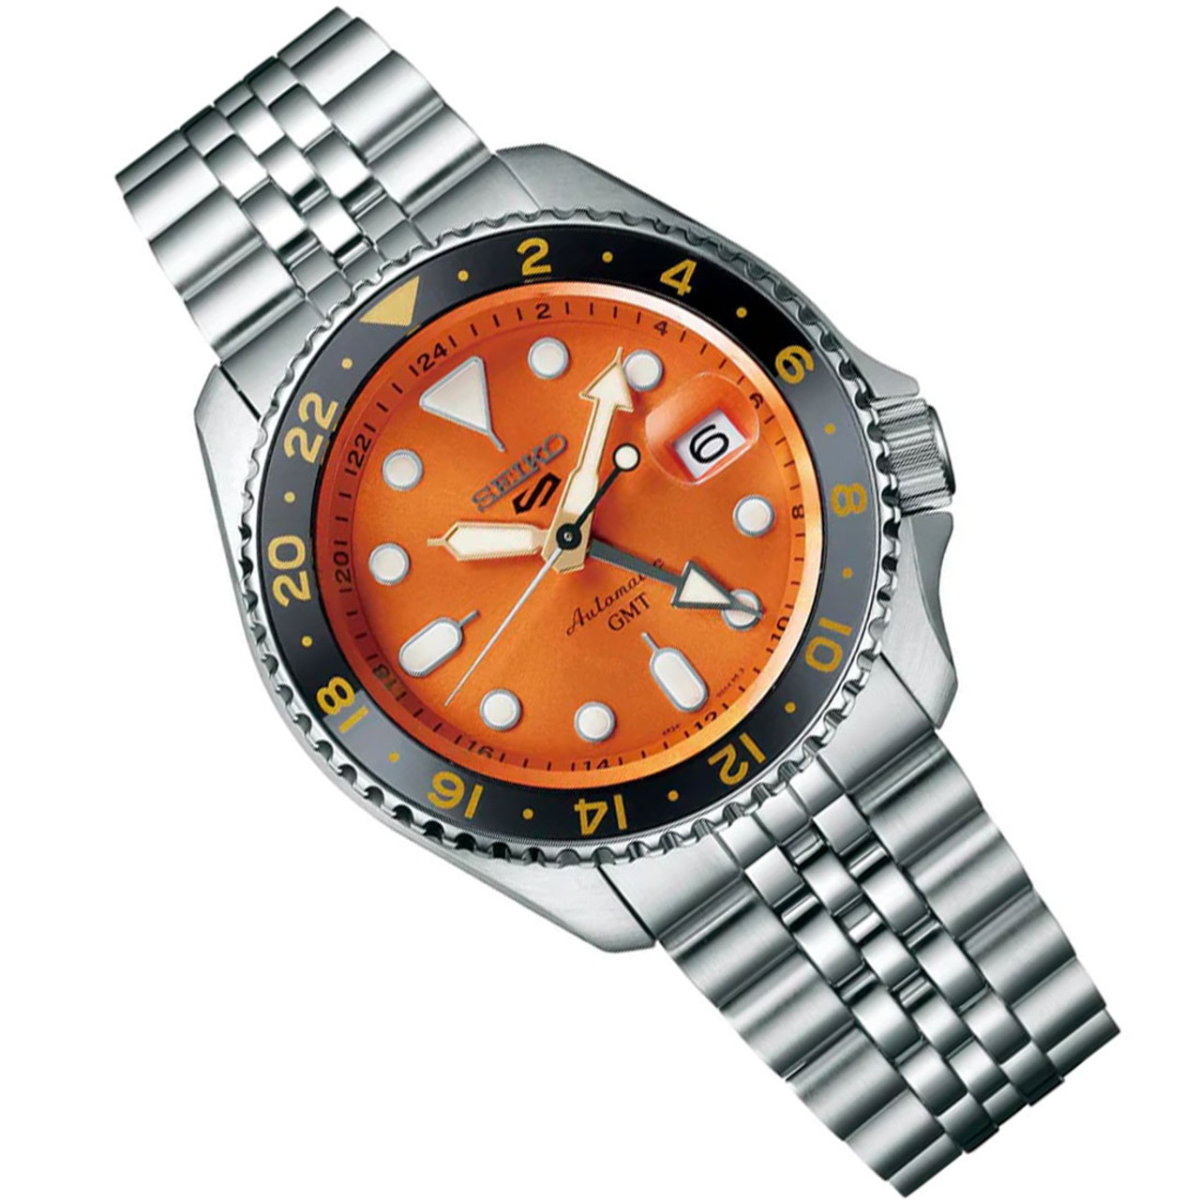 Seiko 5 Sports GMT Automatic Watch SSK005 SSK005K SSK005K1